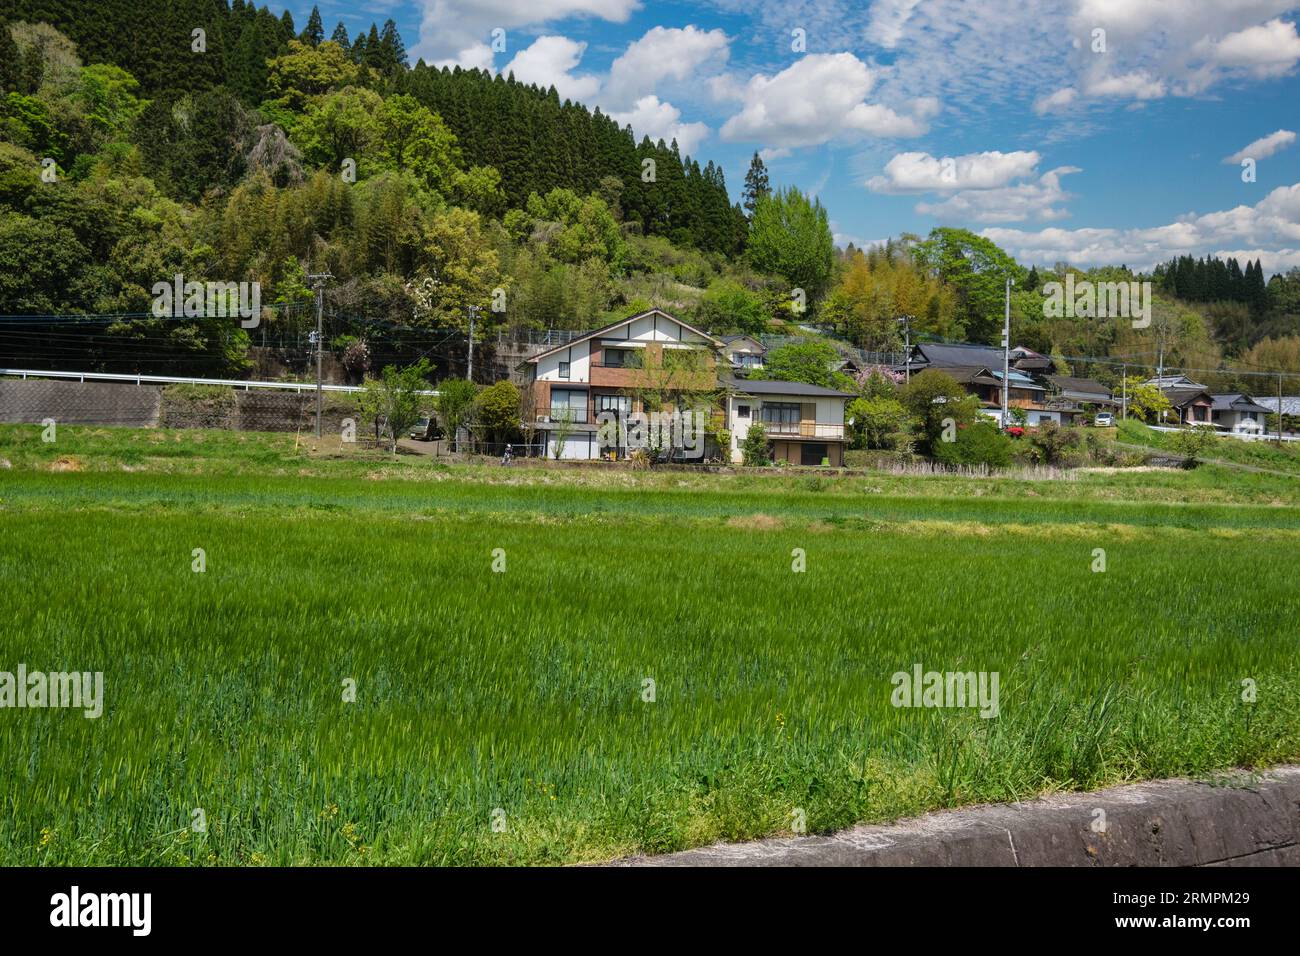 Japon, Kyushu, district de Bungo Ono. Champs et maisons agricoles irrigués. Préfecture d'Oita. Banque D'Images